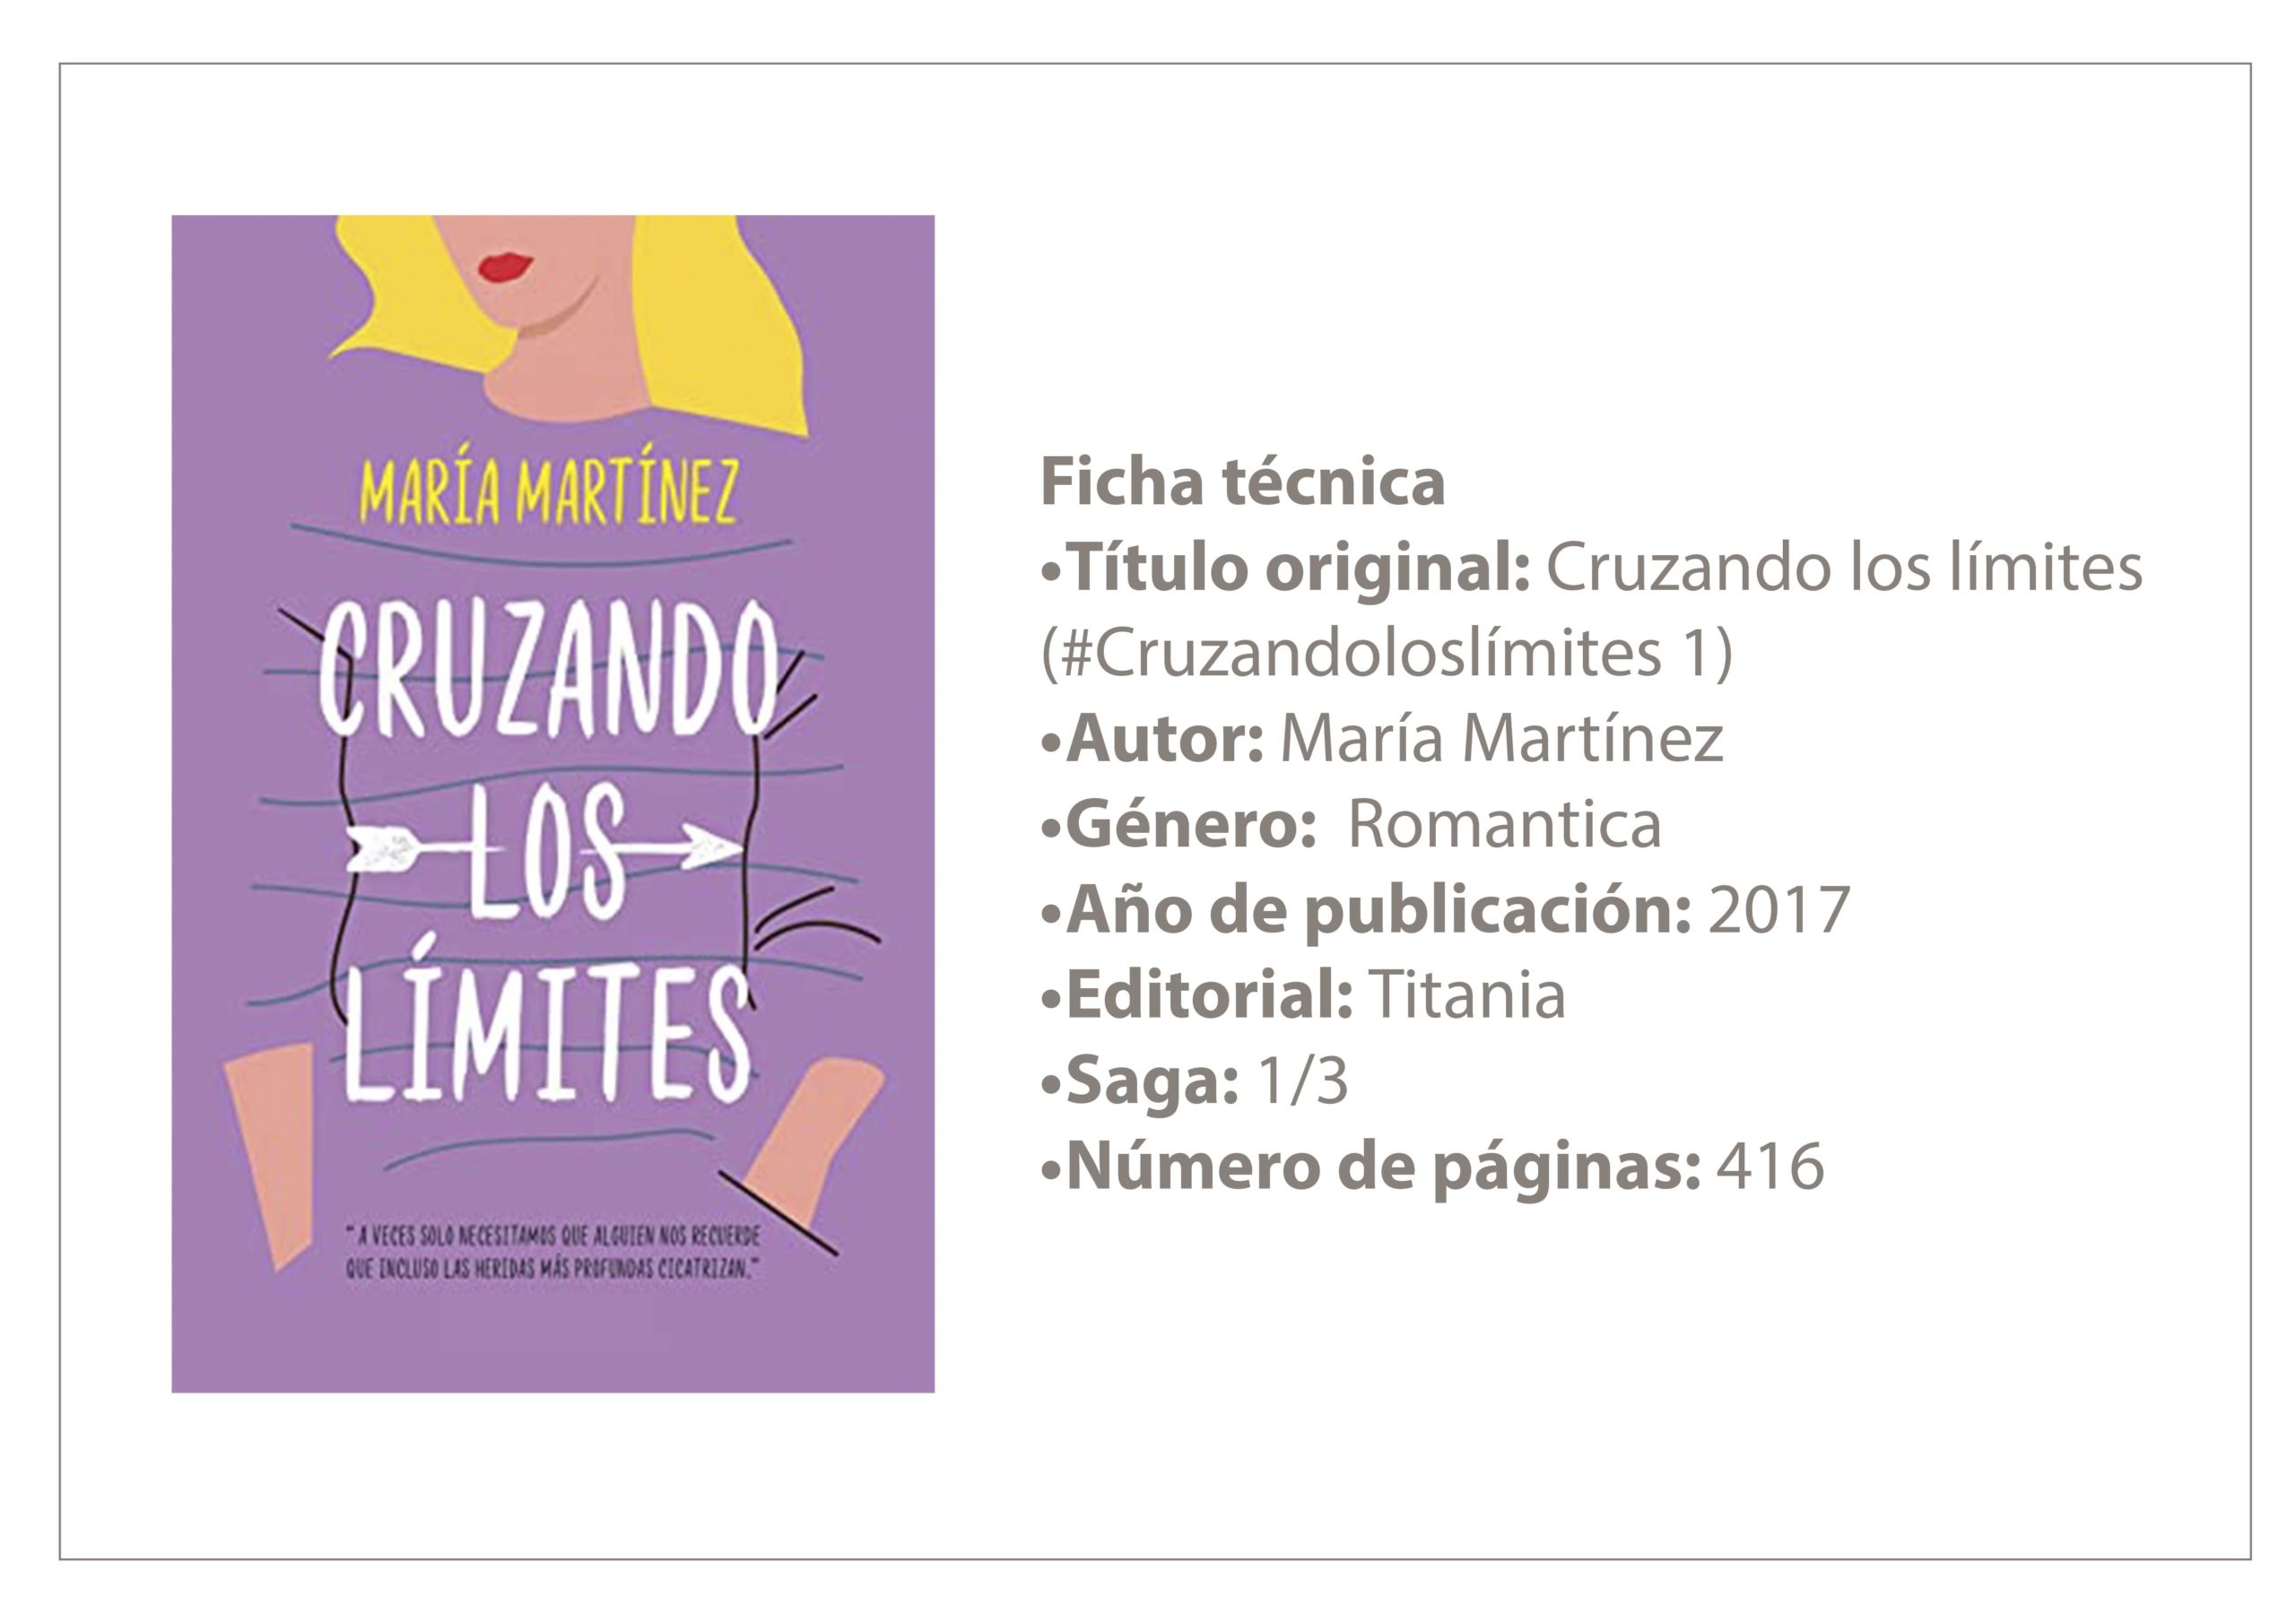 María Martínez on X: Serie Cruzando los límites. 1. Cruzando los